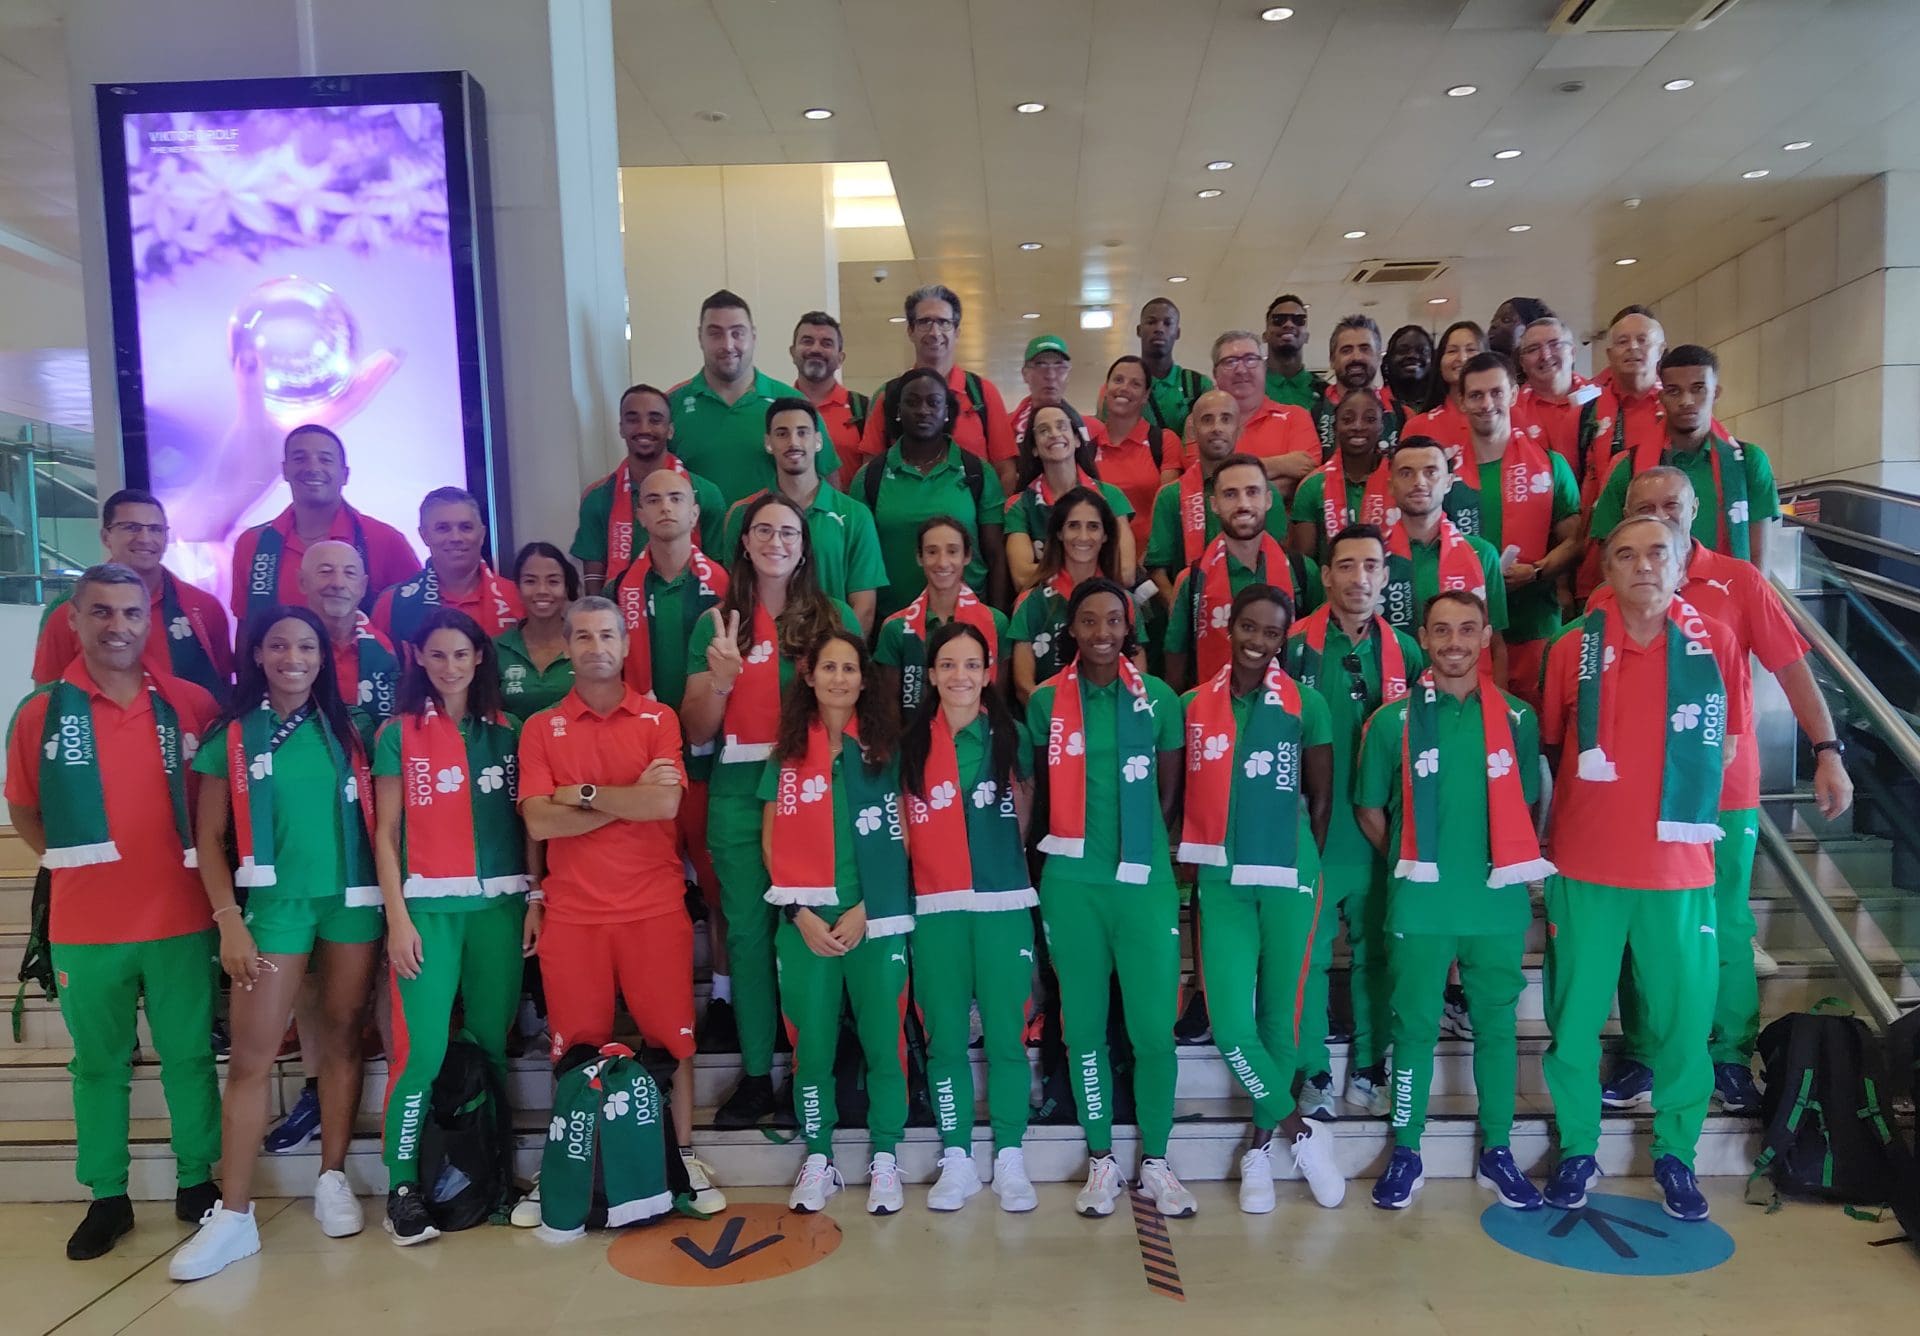 foto de grupo dos atletas portugueses no campeonato europeu de atletismo em munique em 2022